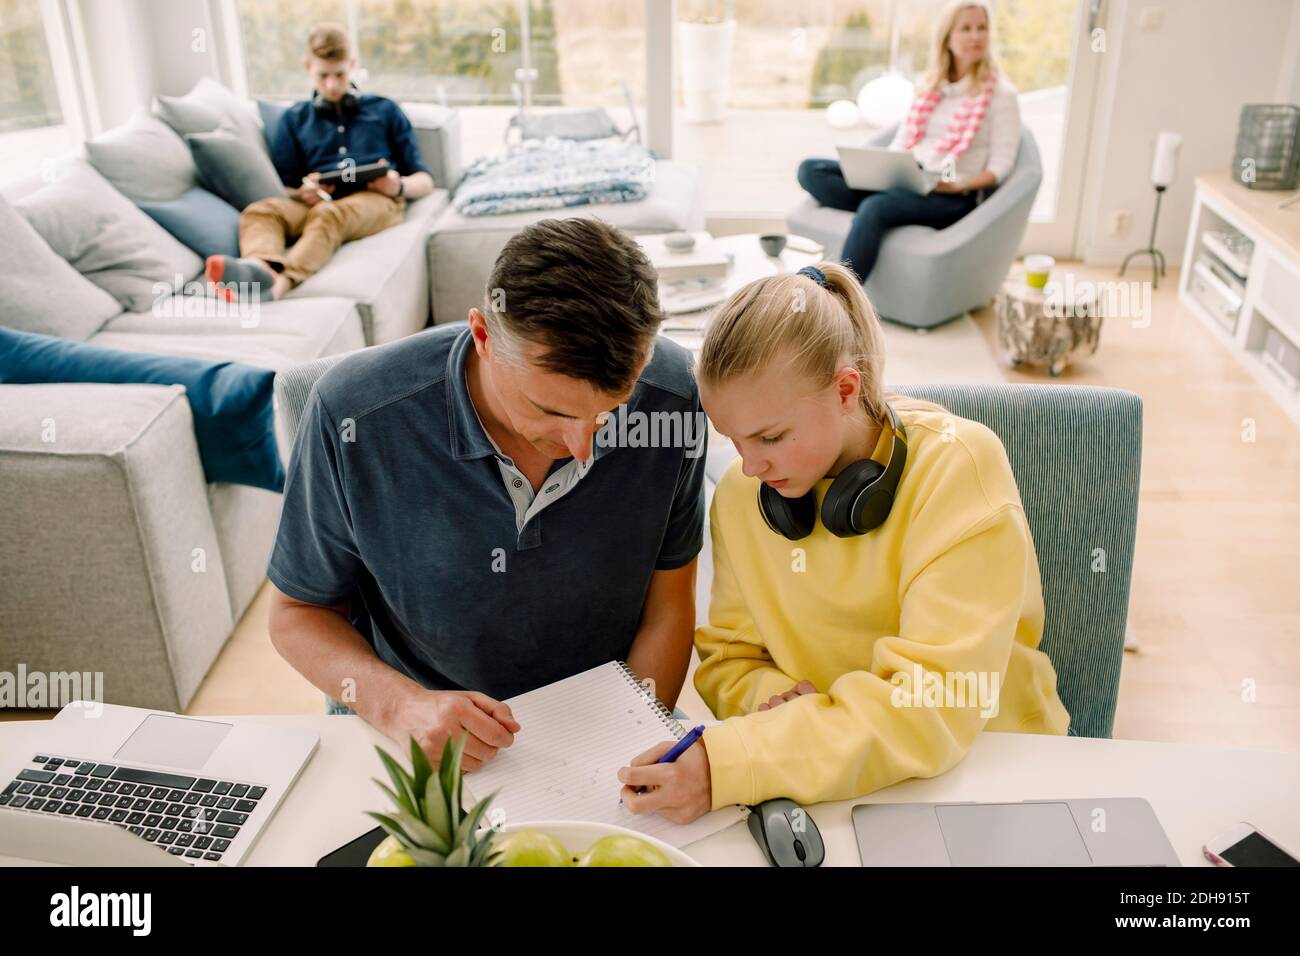 Vue en grand angle de la fille enseignante du père pendant qu'elle est assise table dans la salle de séjour Banque D'Images